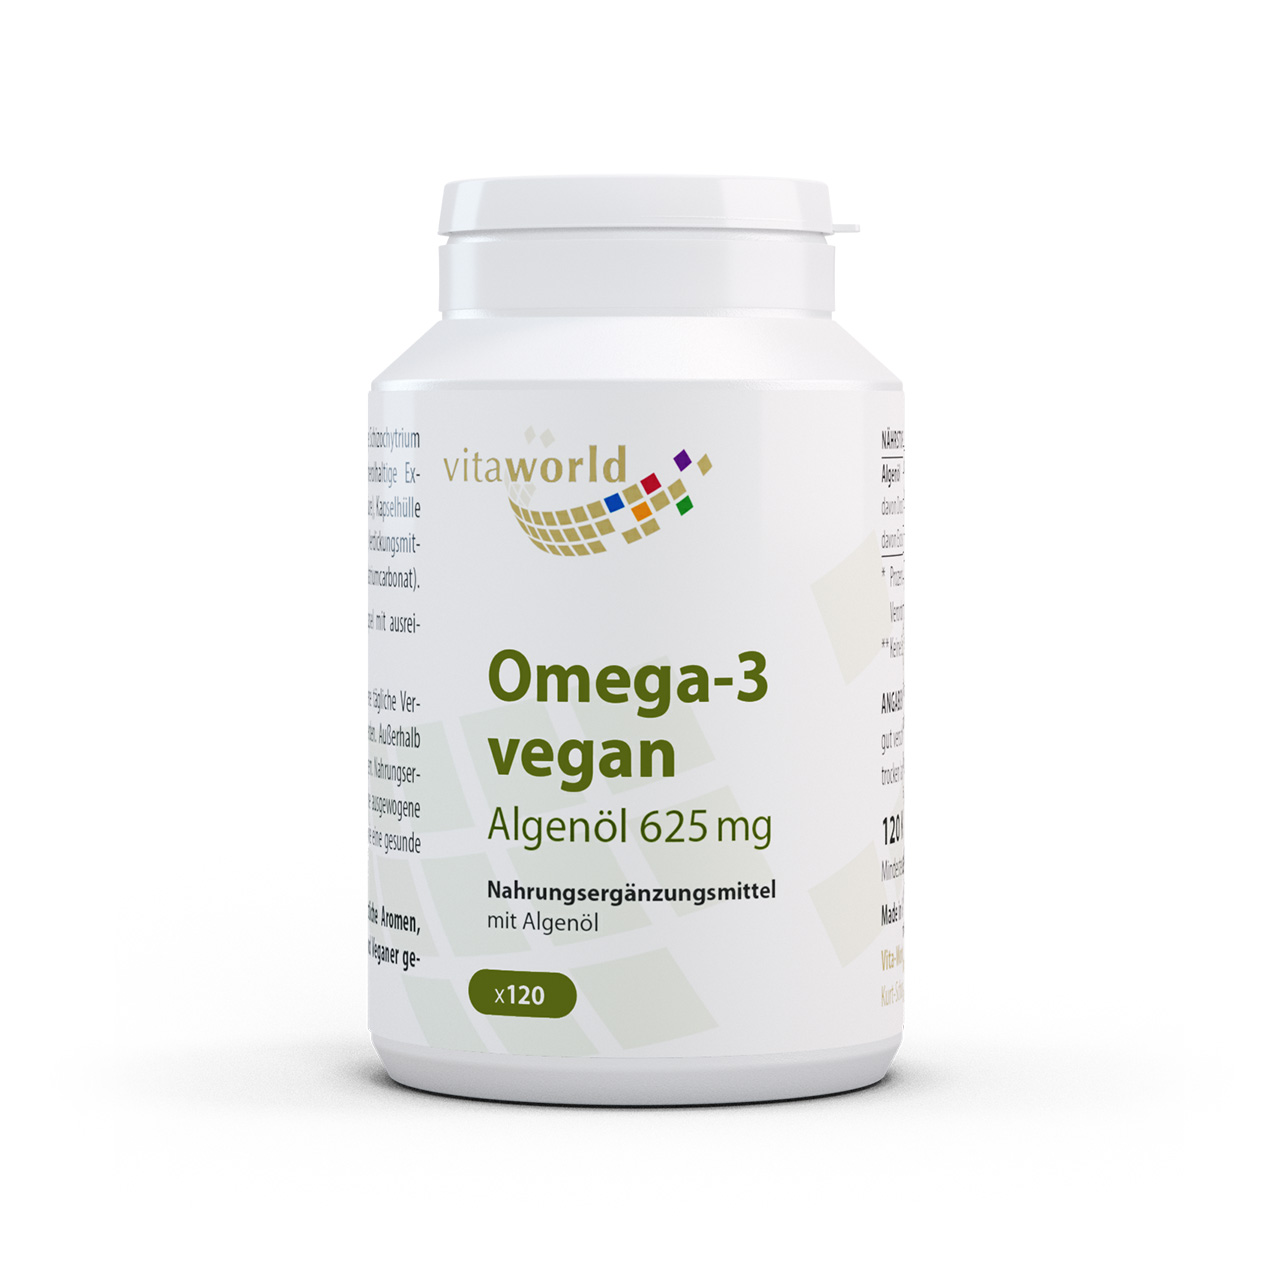 Vita World Omega 3 vegan Algenöl | 120 Kapseln | 250 mg DHA pro Kapsel | gluten- und laktosefrei